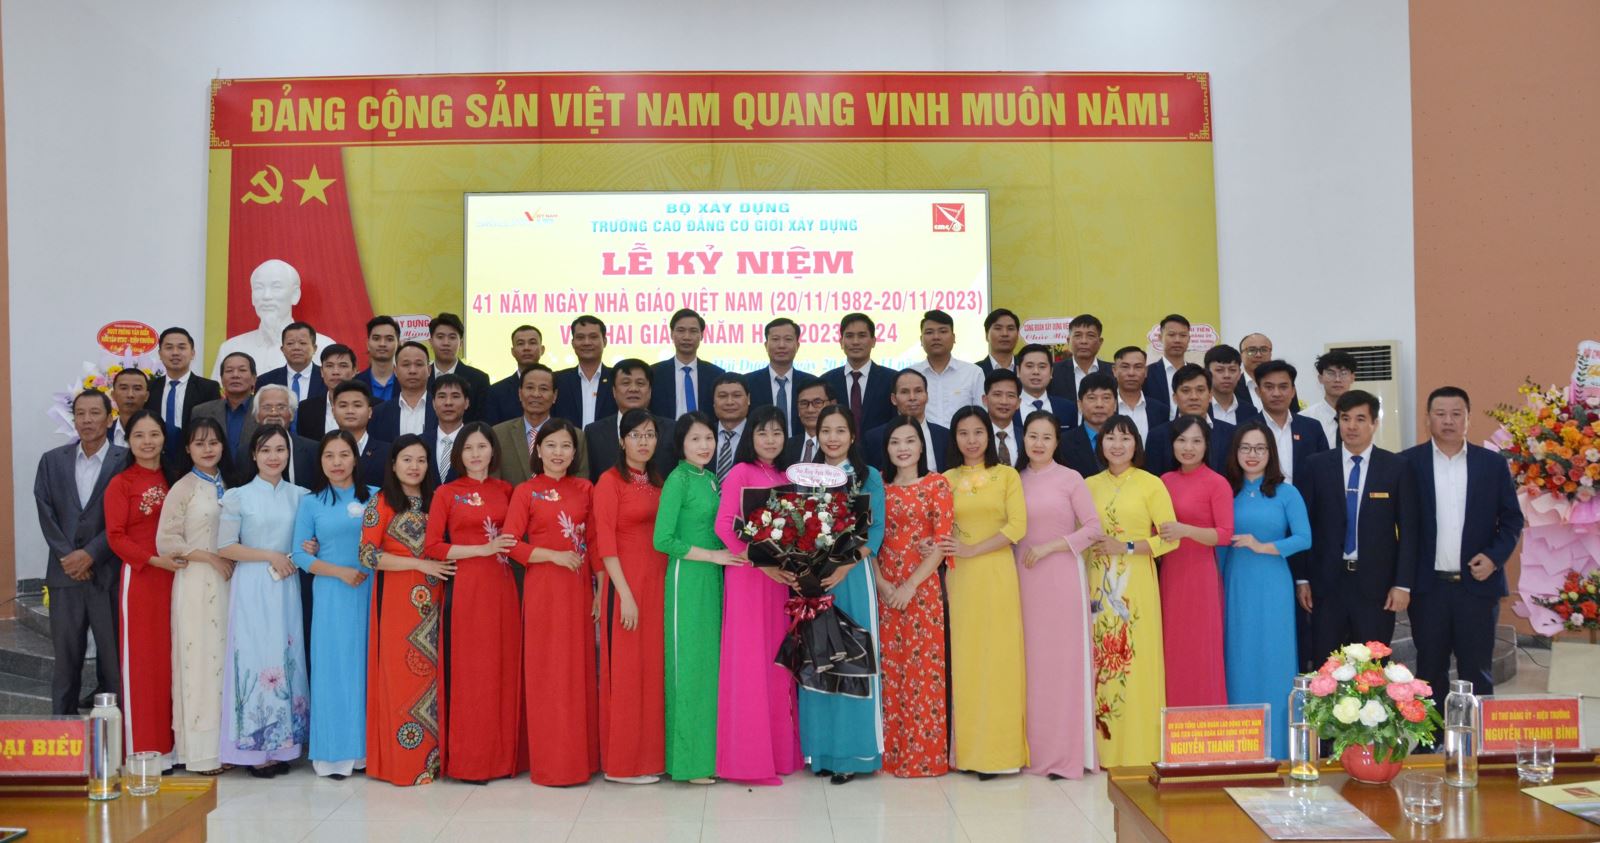 Trường Cao đẳng Cơ giới Xây dựng tổ chức Lễ kỷ niệm 41 năm ngày Nhà giáo Việt Nam (20/11/1982-20/11/2023) và Khai giảng năm học 2023-2024